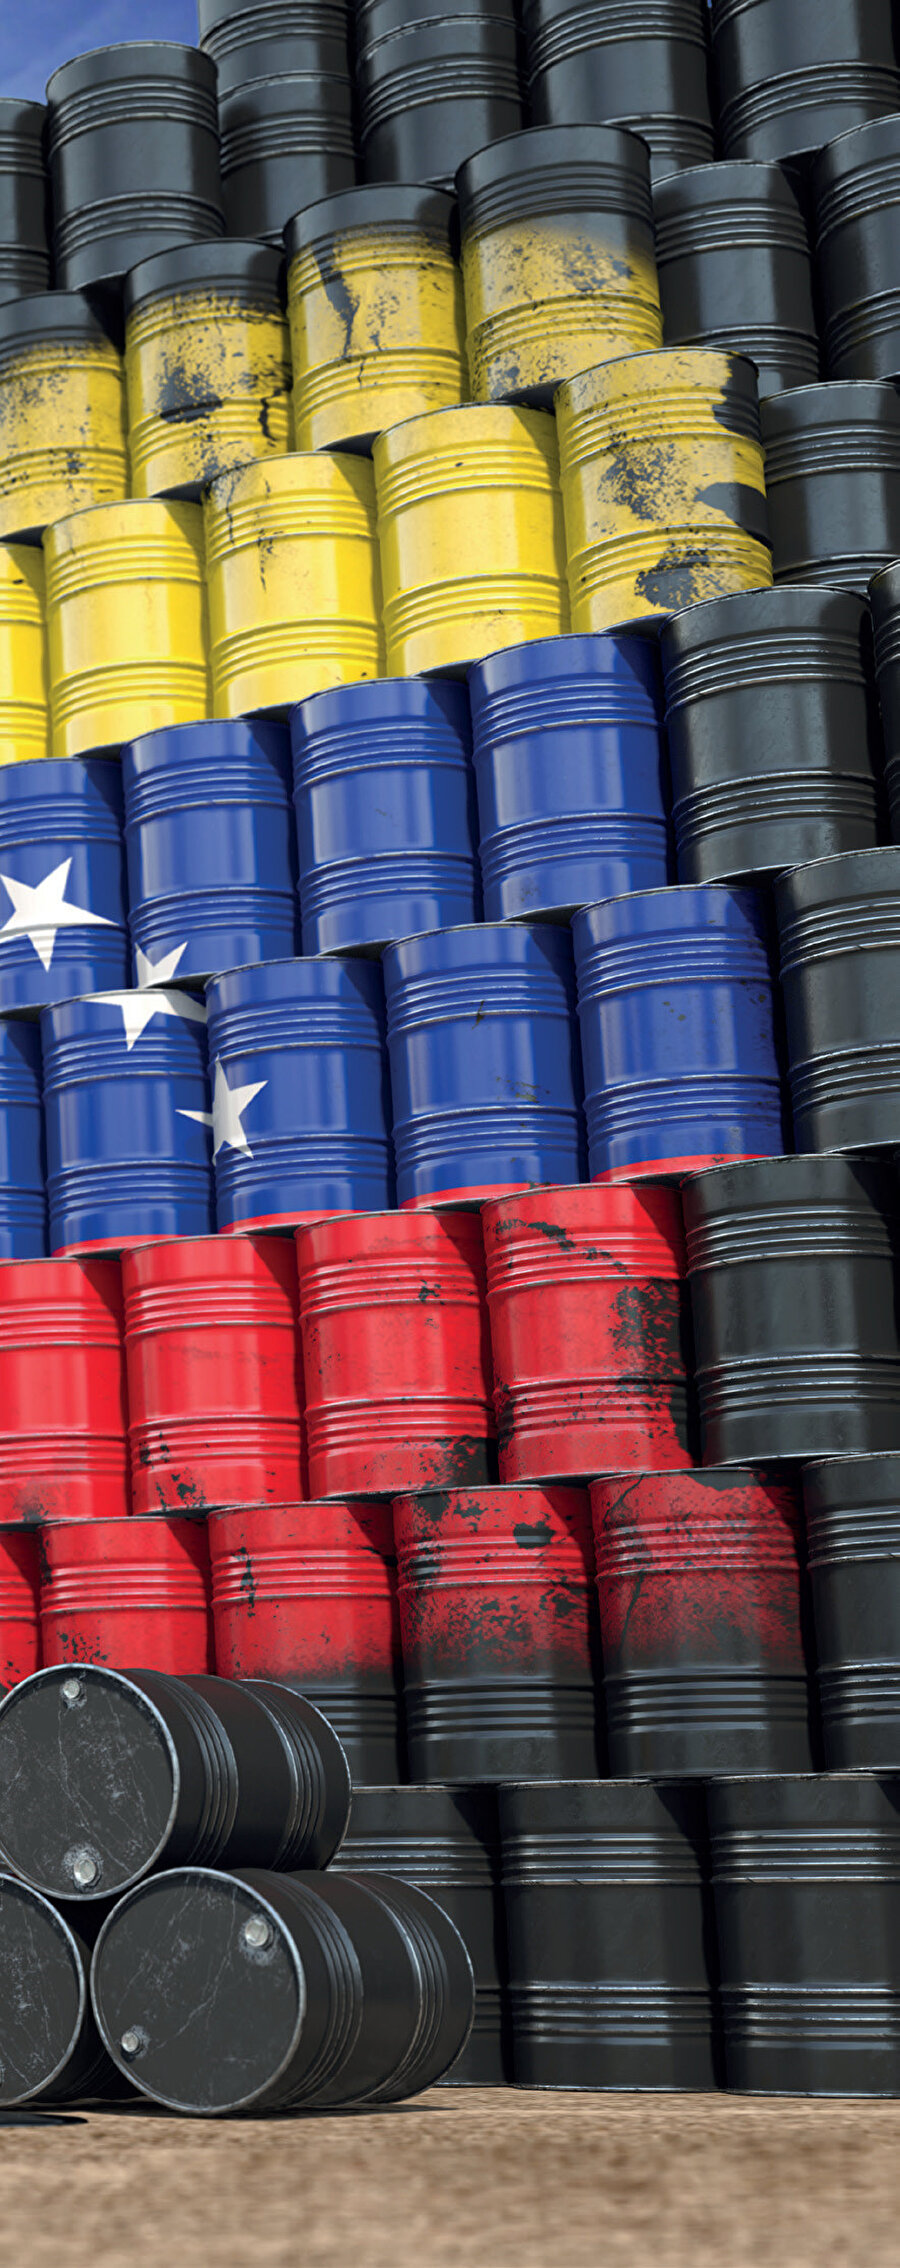 Venezuela, dünyanın en büyük petrol rezervlerine sahiptir.